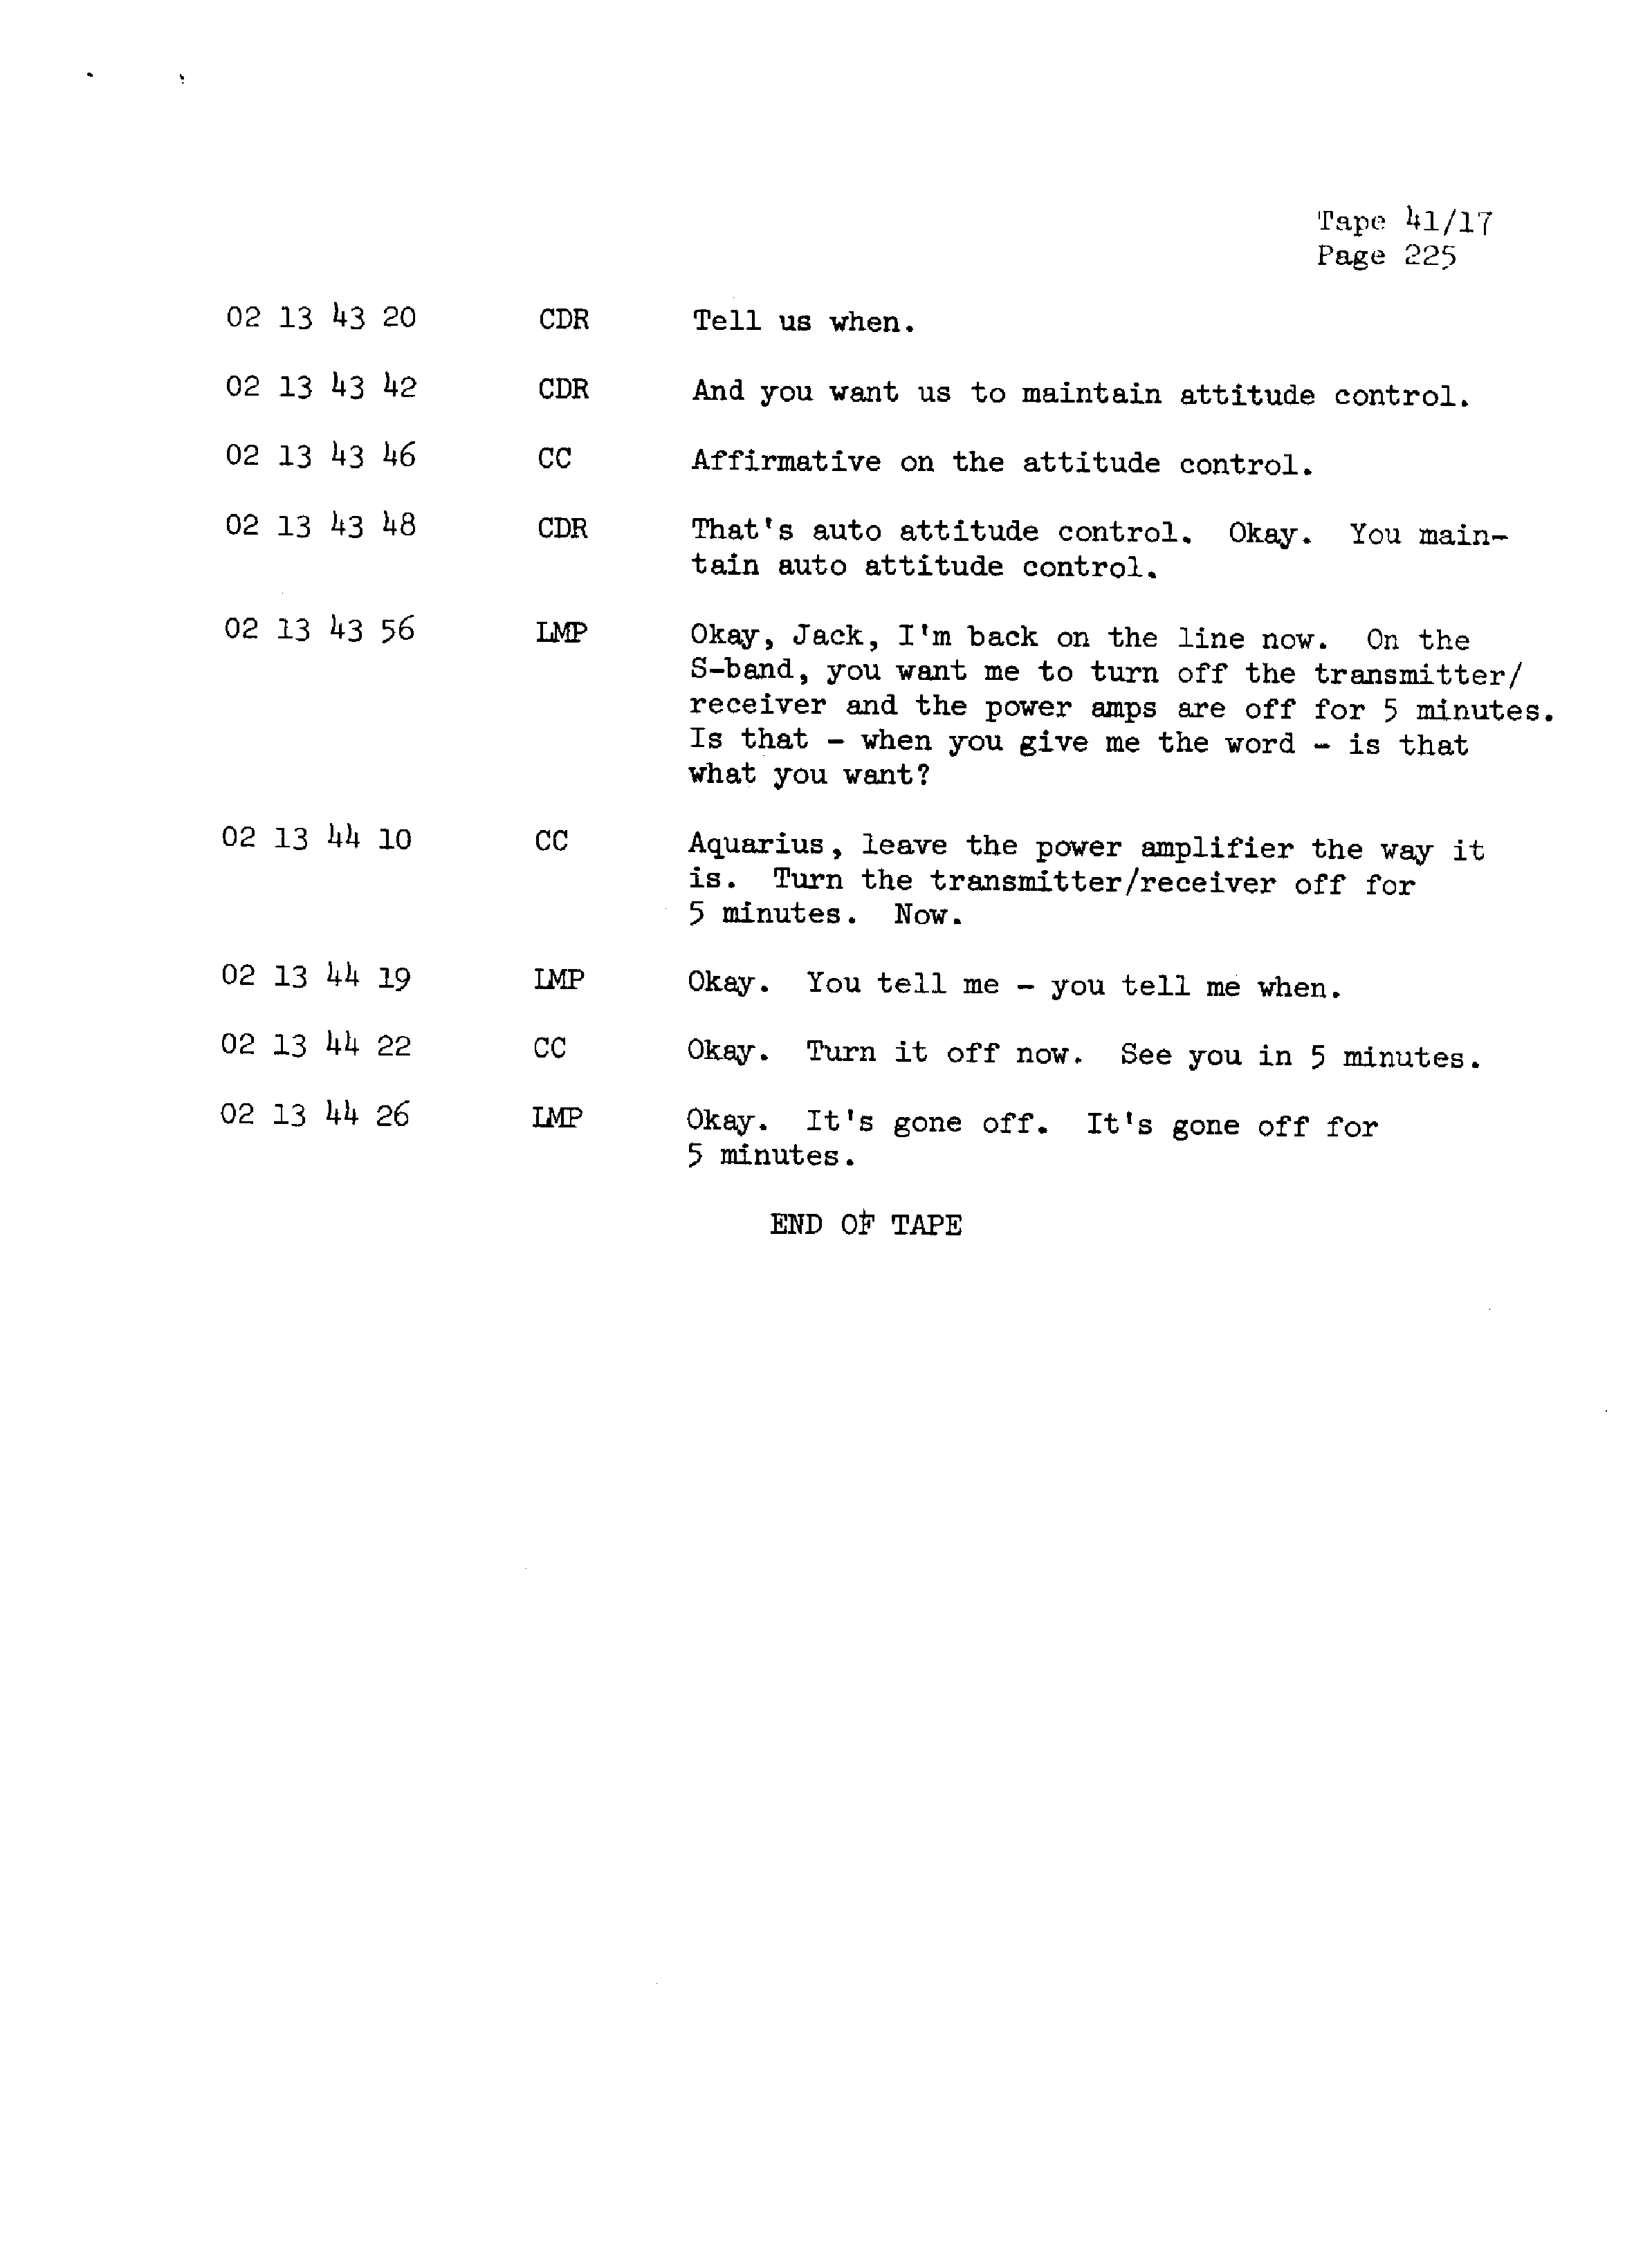 Page 232 of Apollo 13’s original transcript